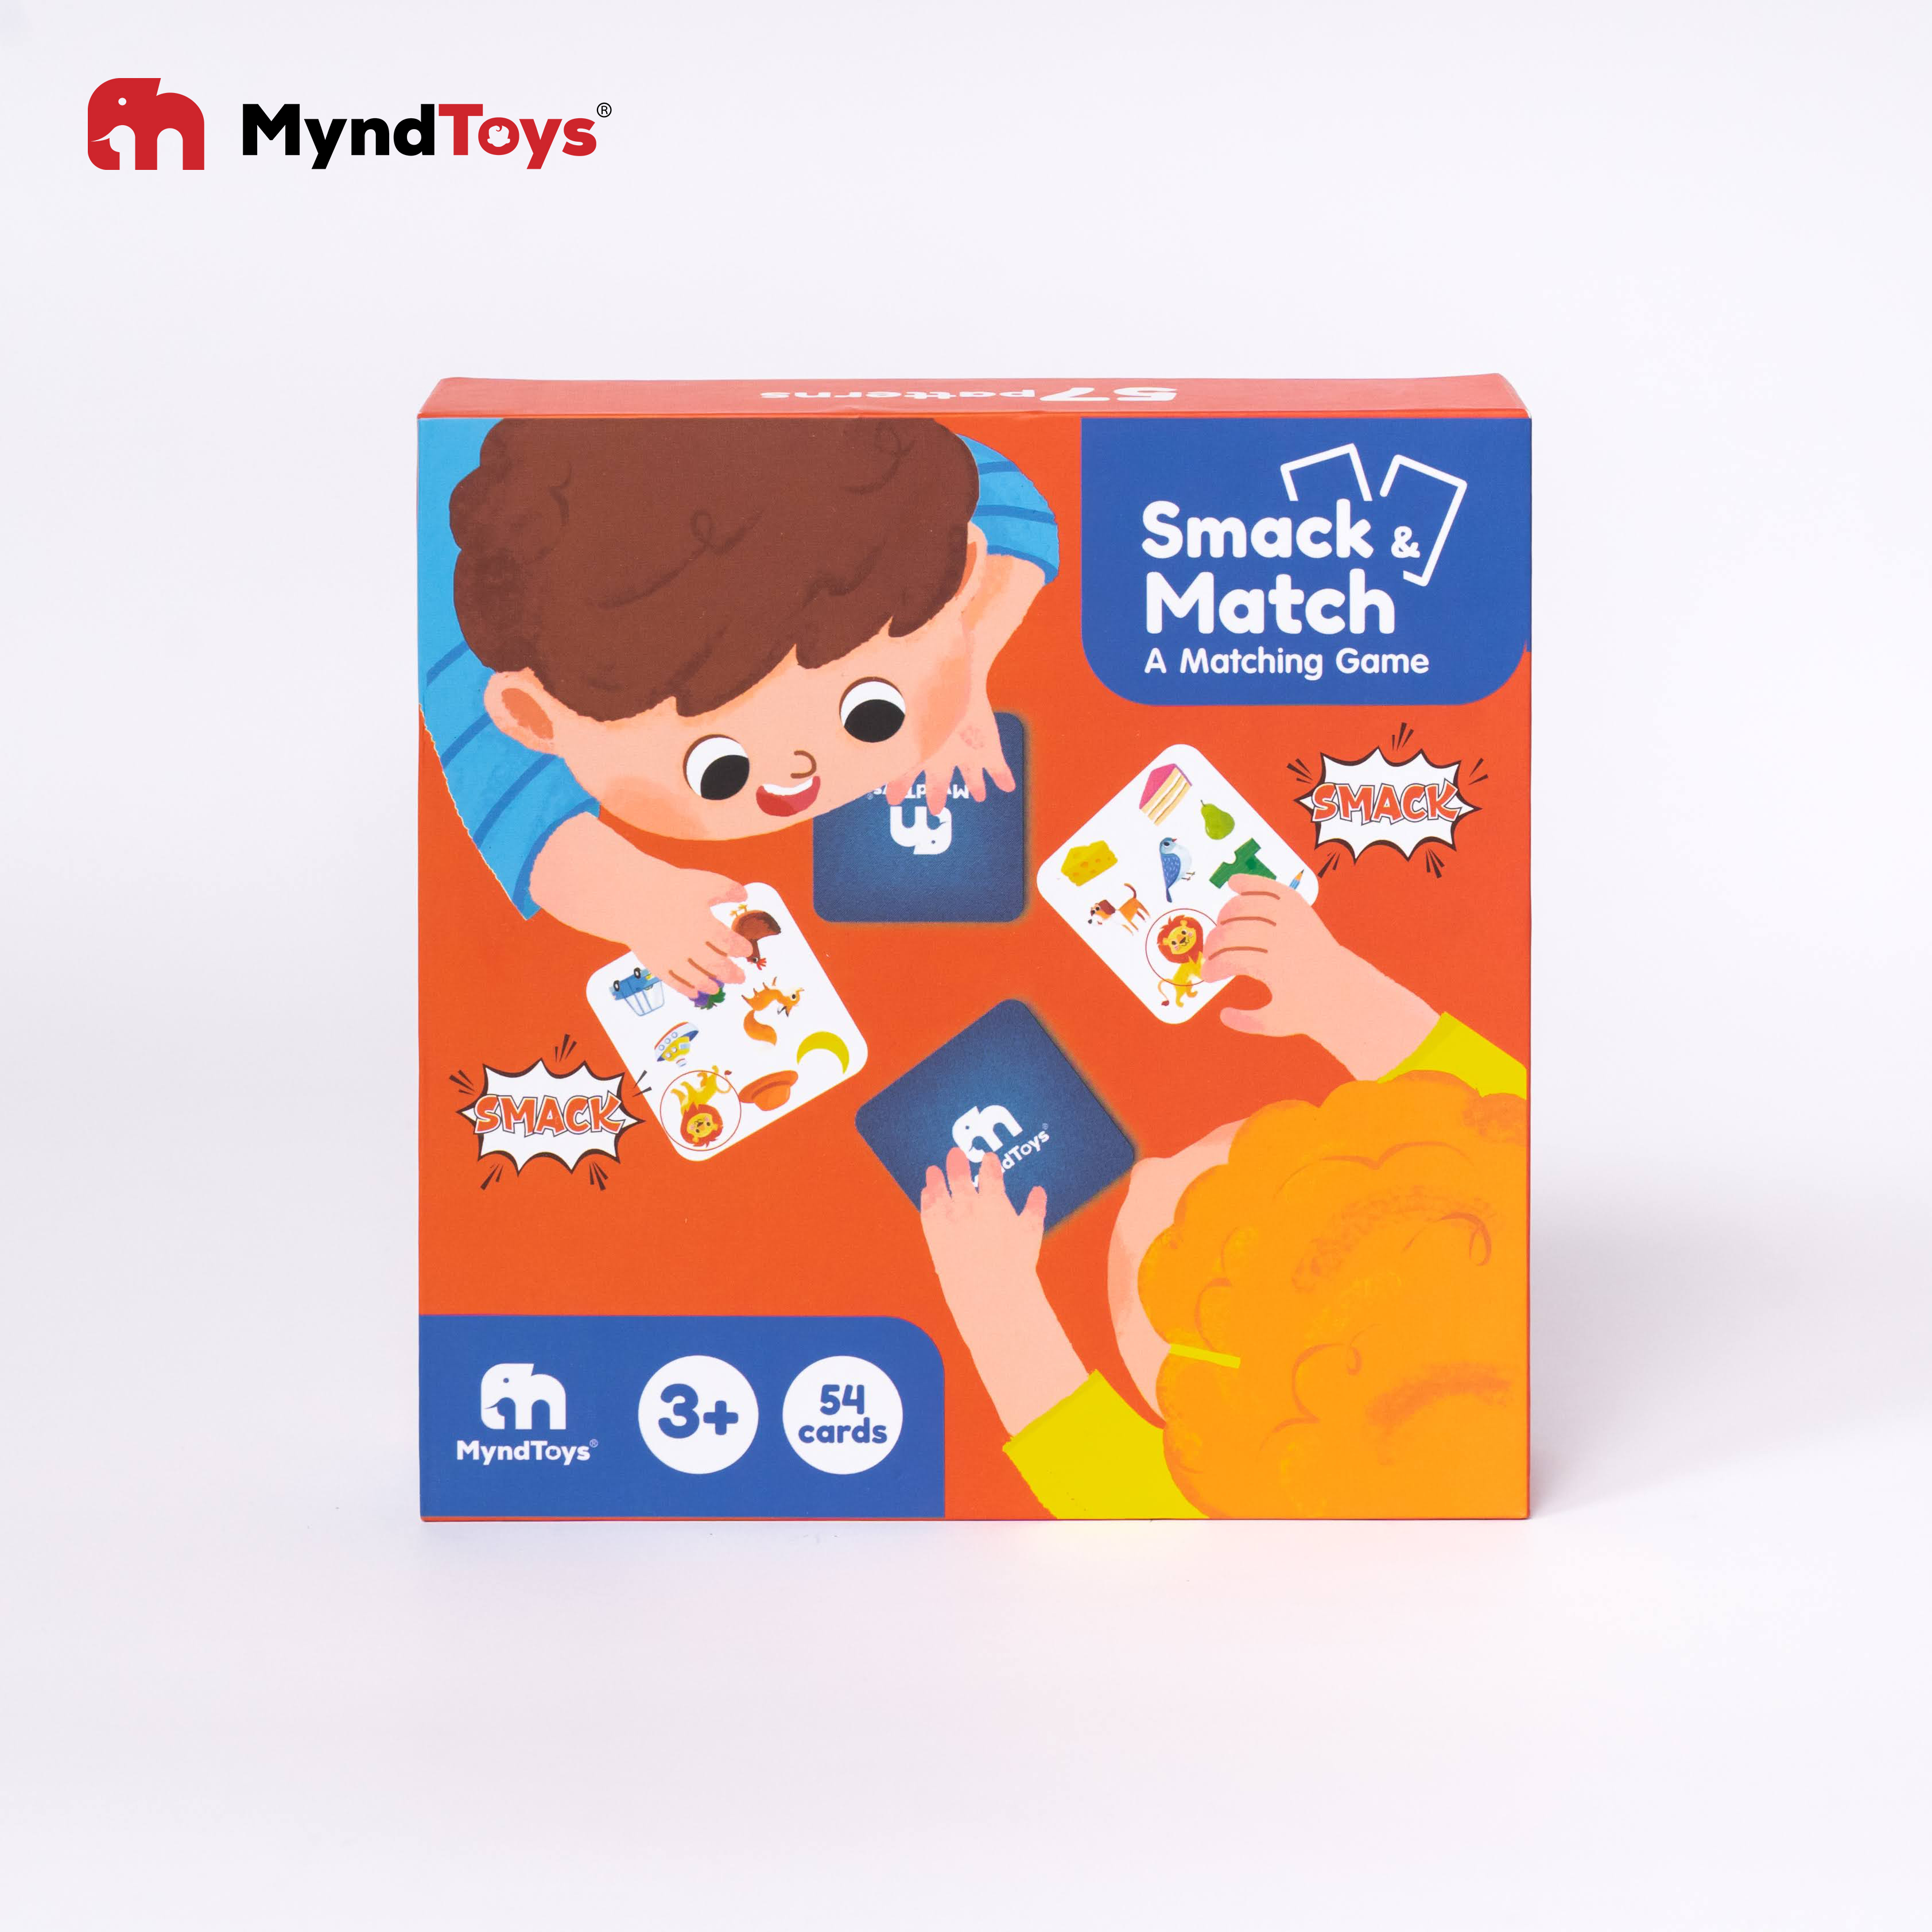 Bộ ghép hình Smack & Match - Matching Game tìm cặp giống nhau cho bé từ 3